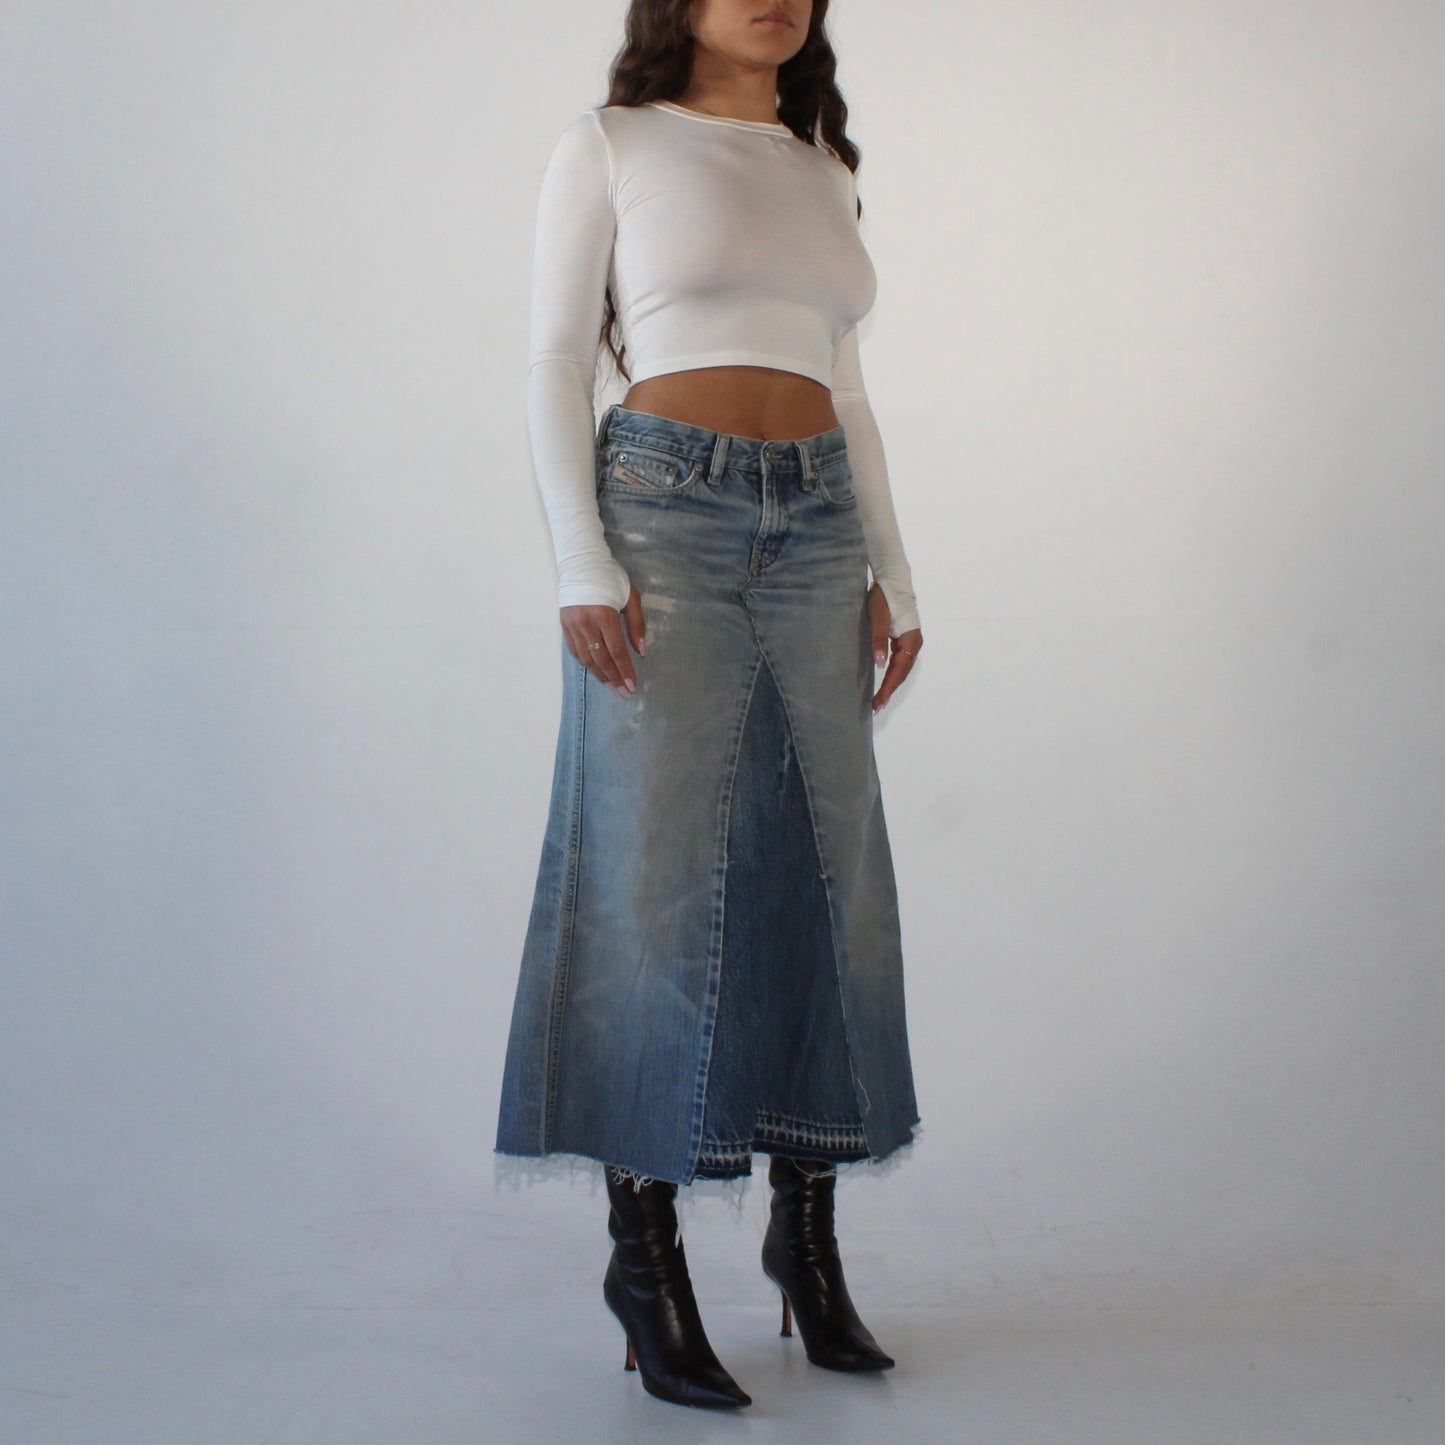 Reworked Vintage Diesel Skirt